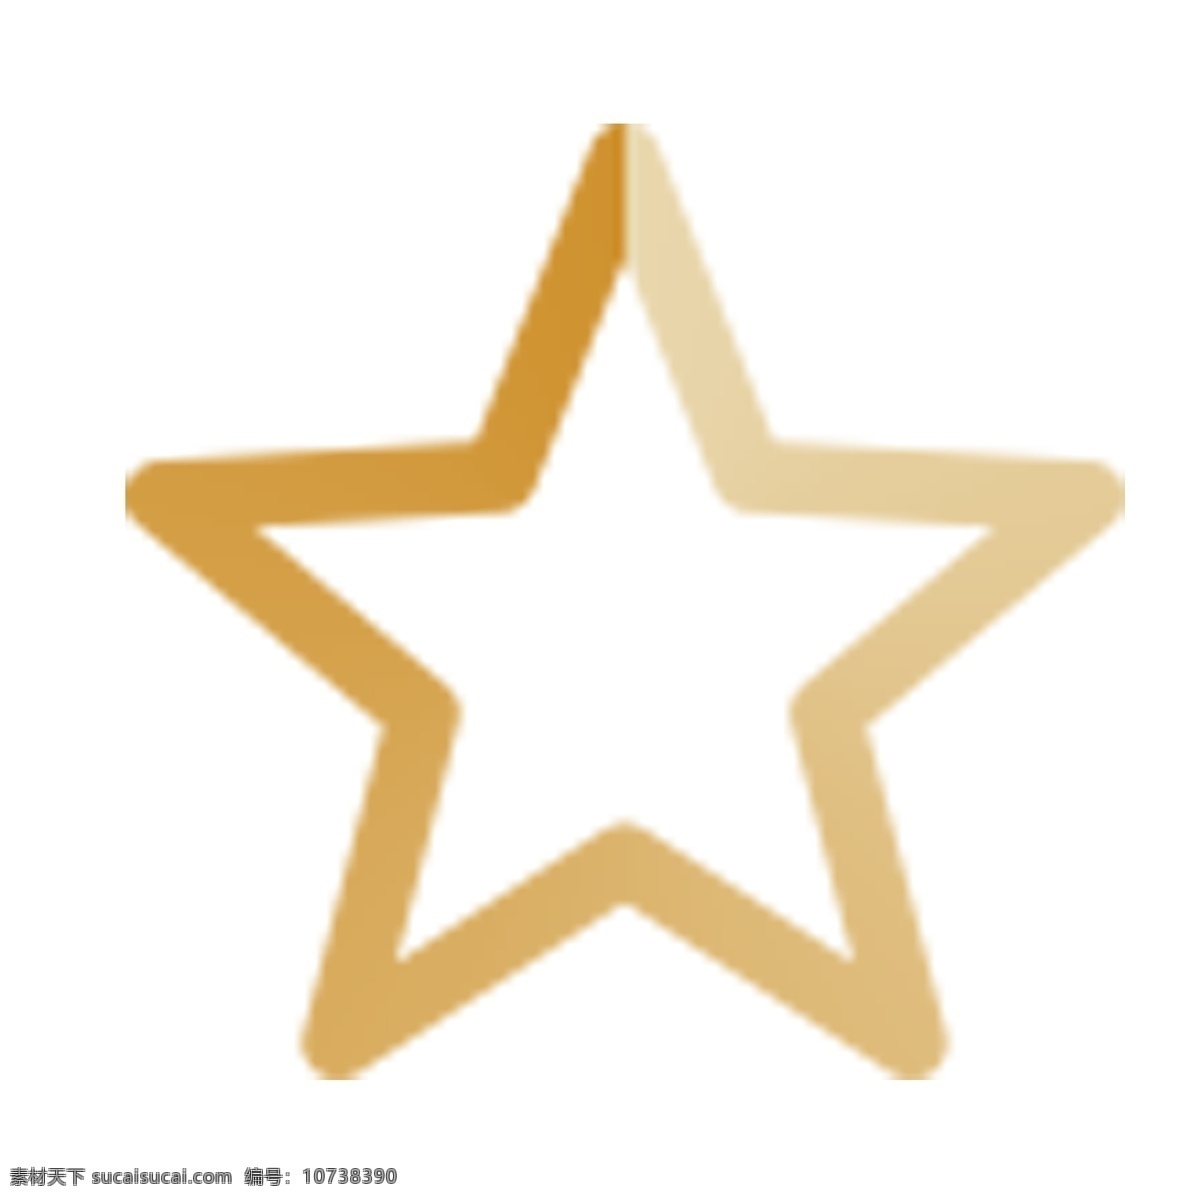 星星形状图标 形状 五角星 卡通 金色图标 渐变图标 简约风格图标 设置线性图标